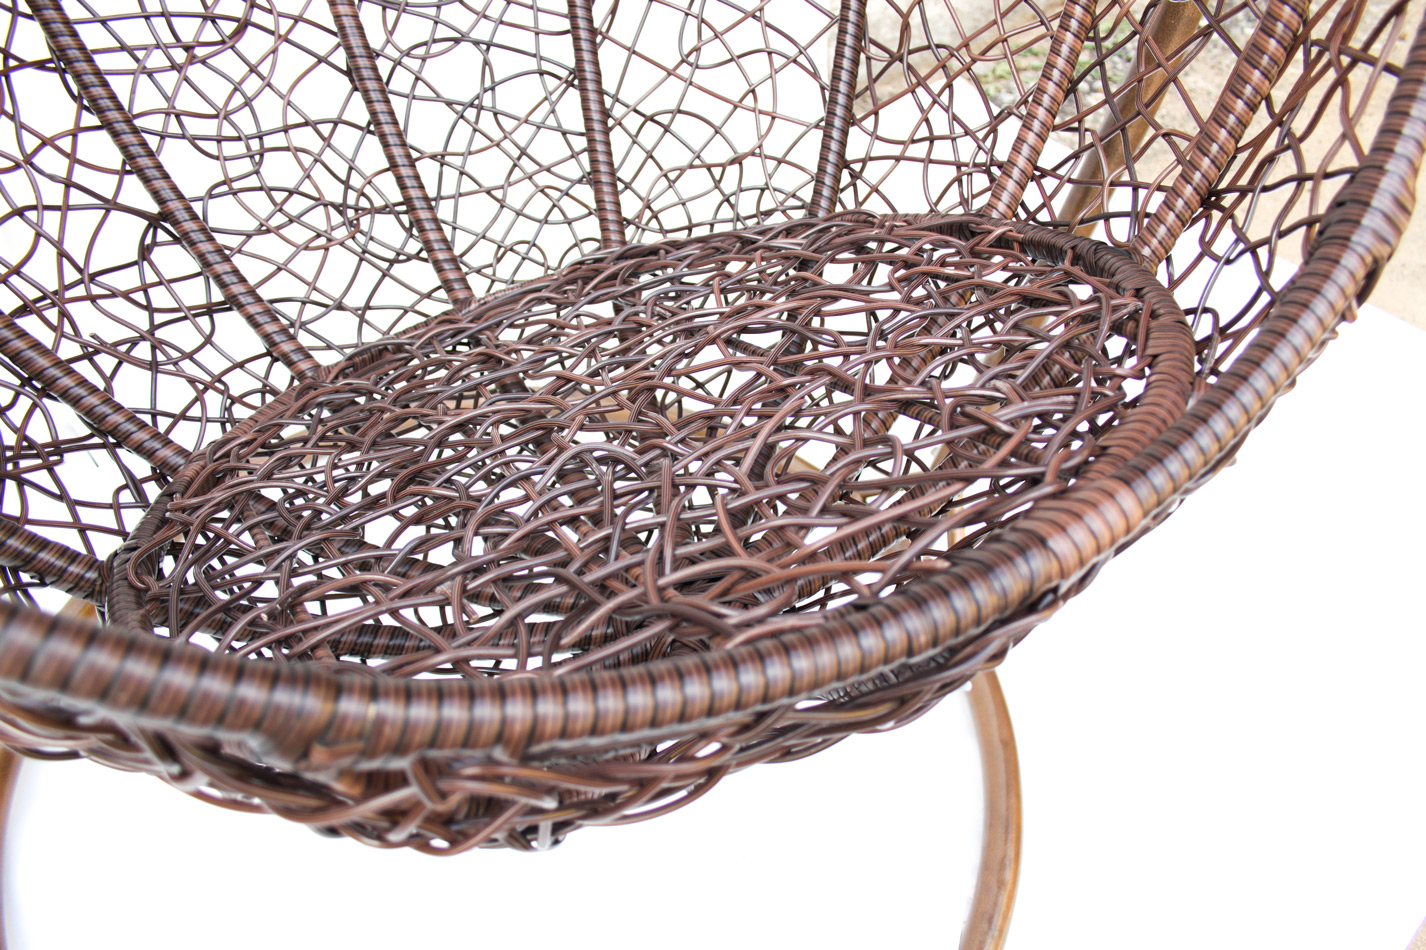 плетение кресла из ротанга